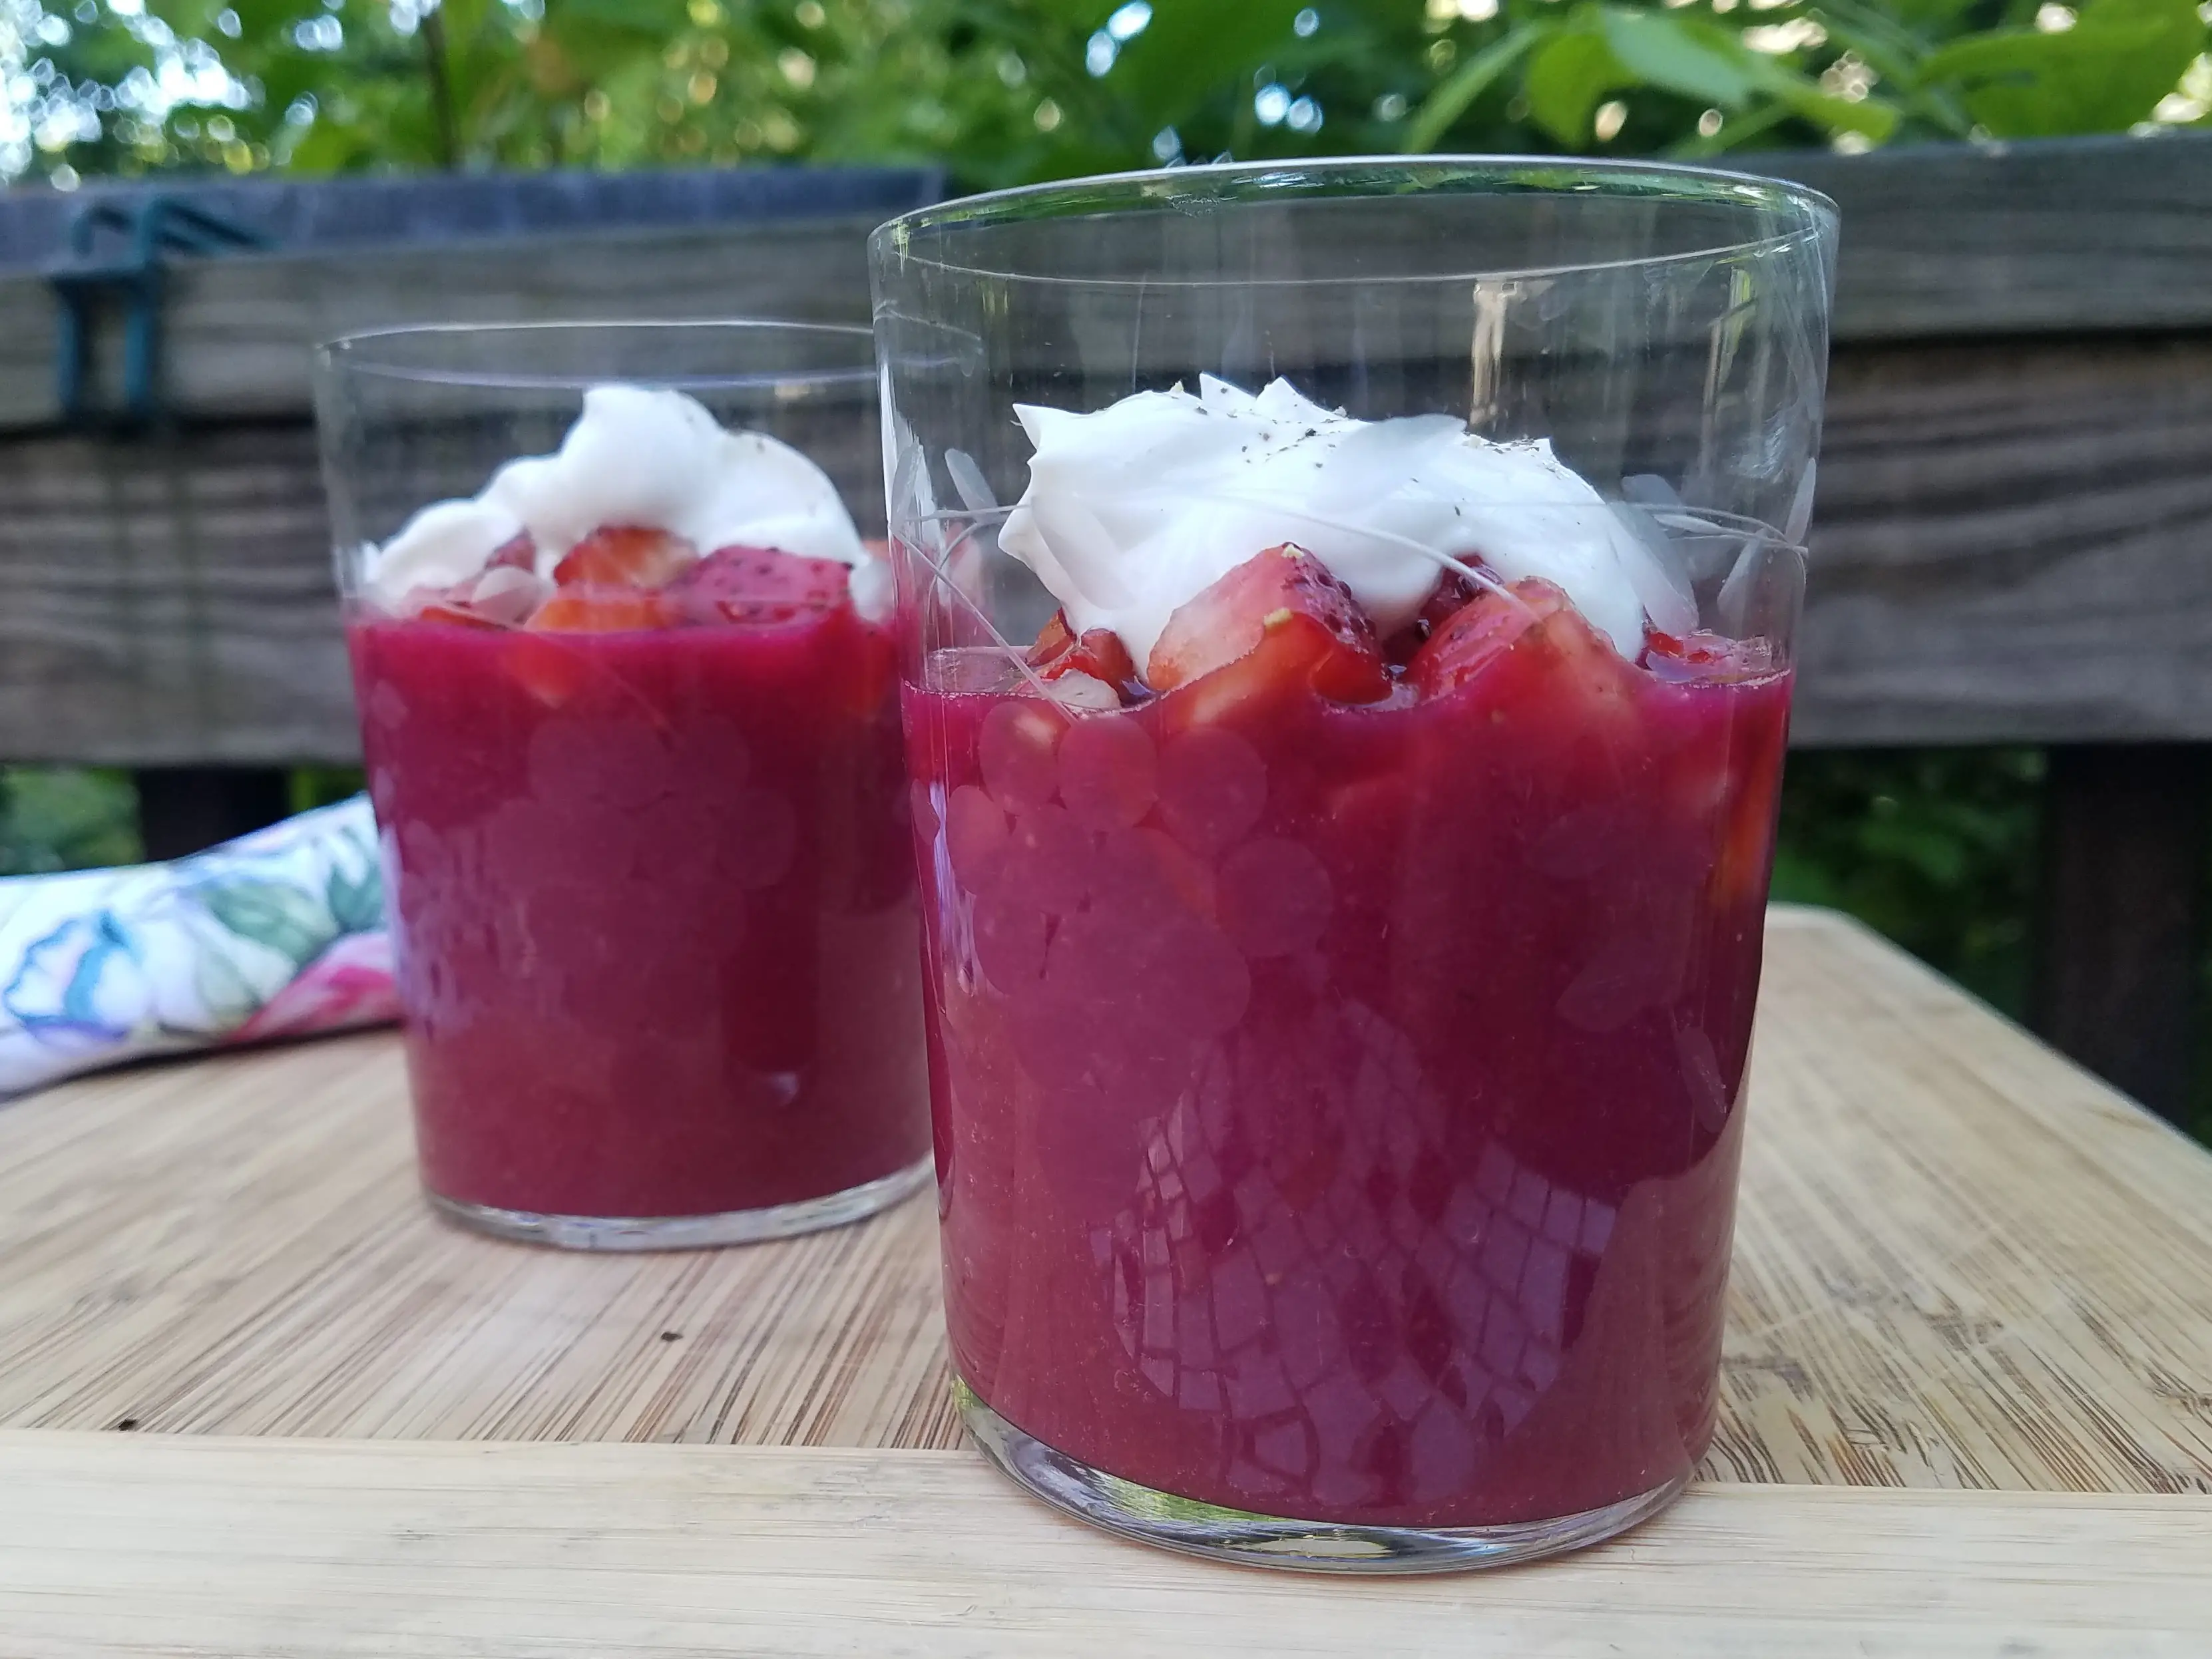 Verrines with strawberry-beet puree and yogurt